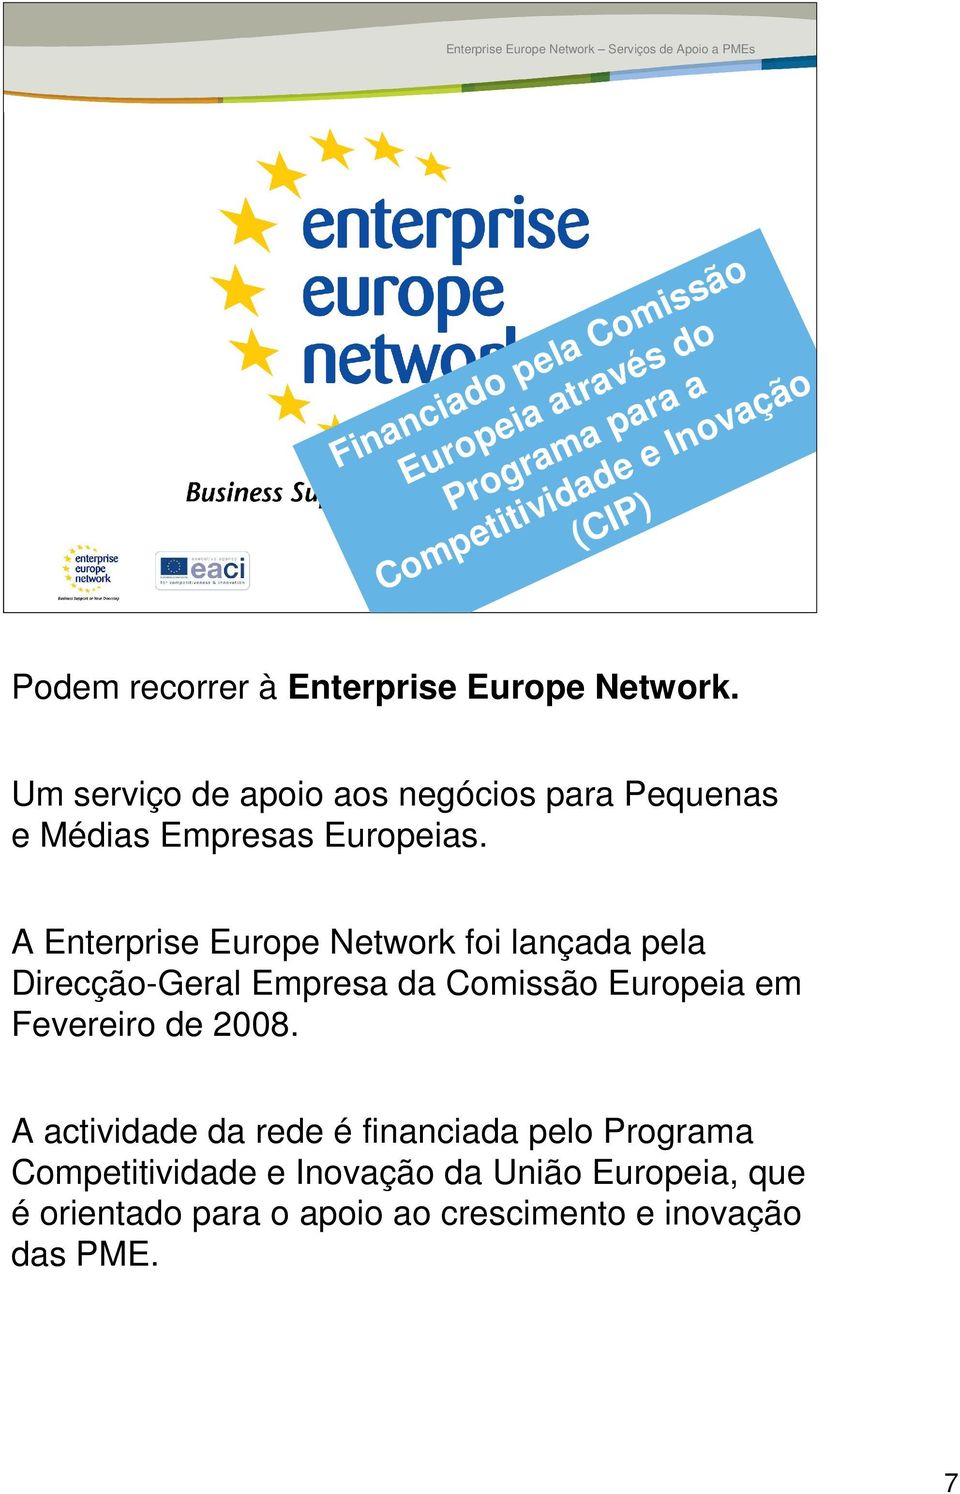 A Enterprise Europe Network foi lançada pela Direcção-Geral Empresa da Comissão Europeia em Fevereiro de 2008.